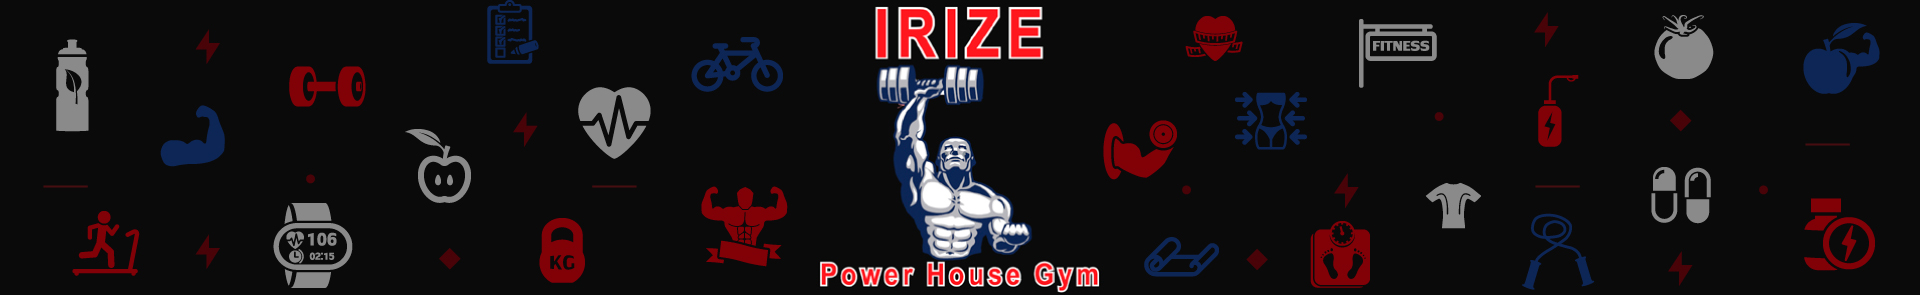 IRIZE Power House Gym, LLC - Header